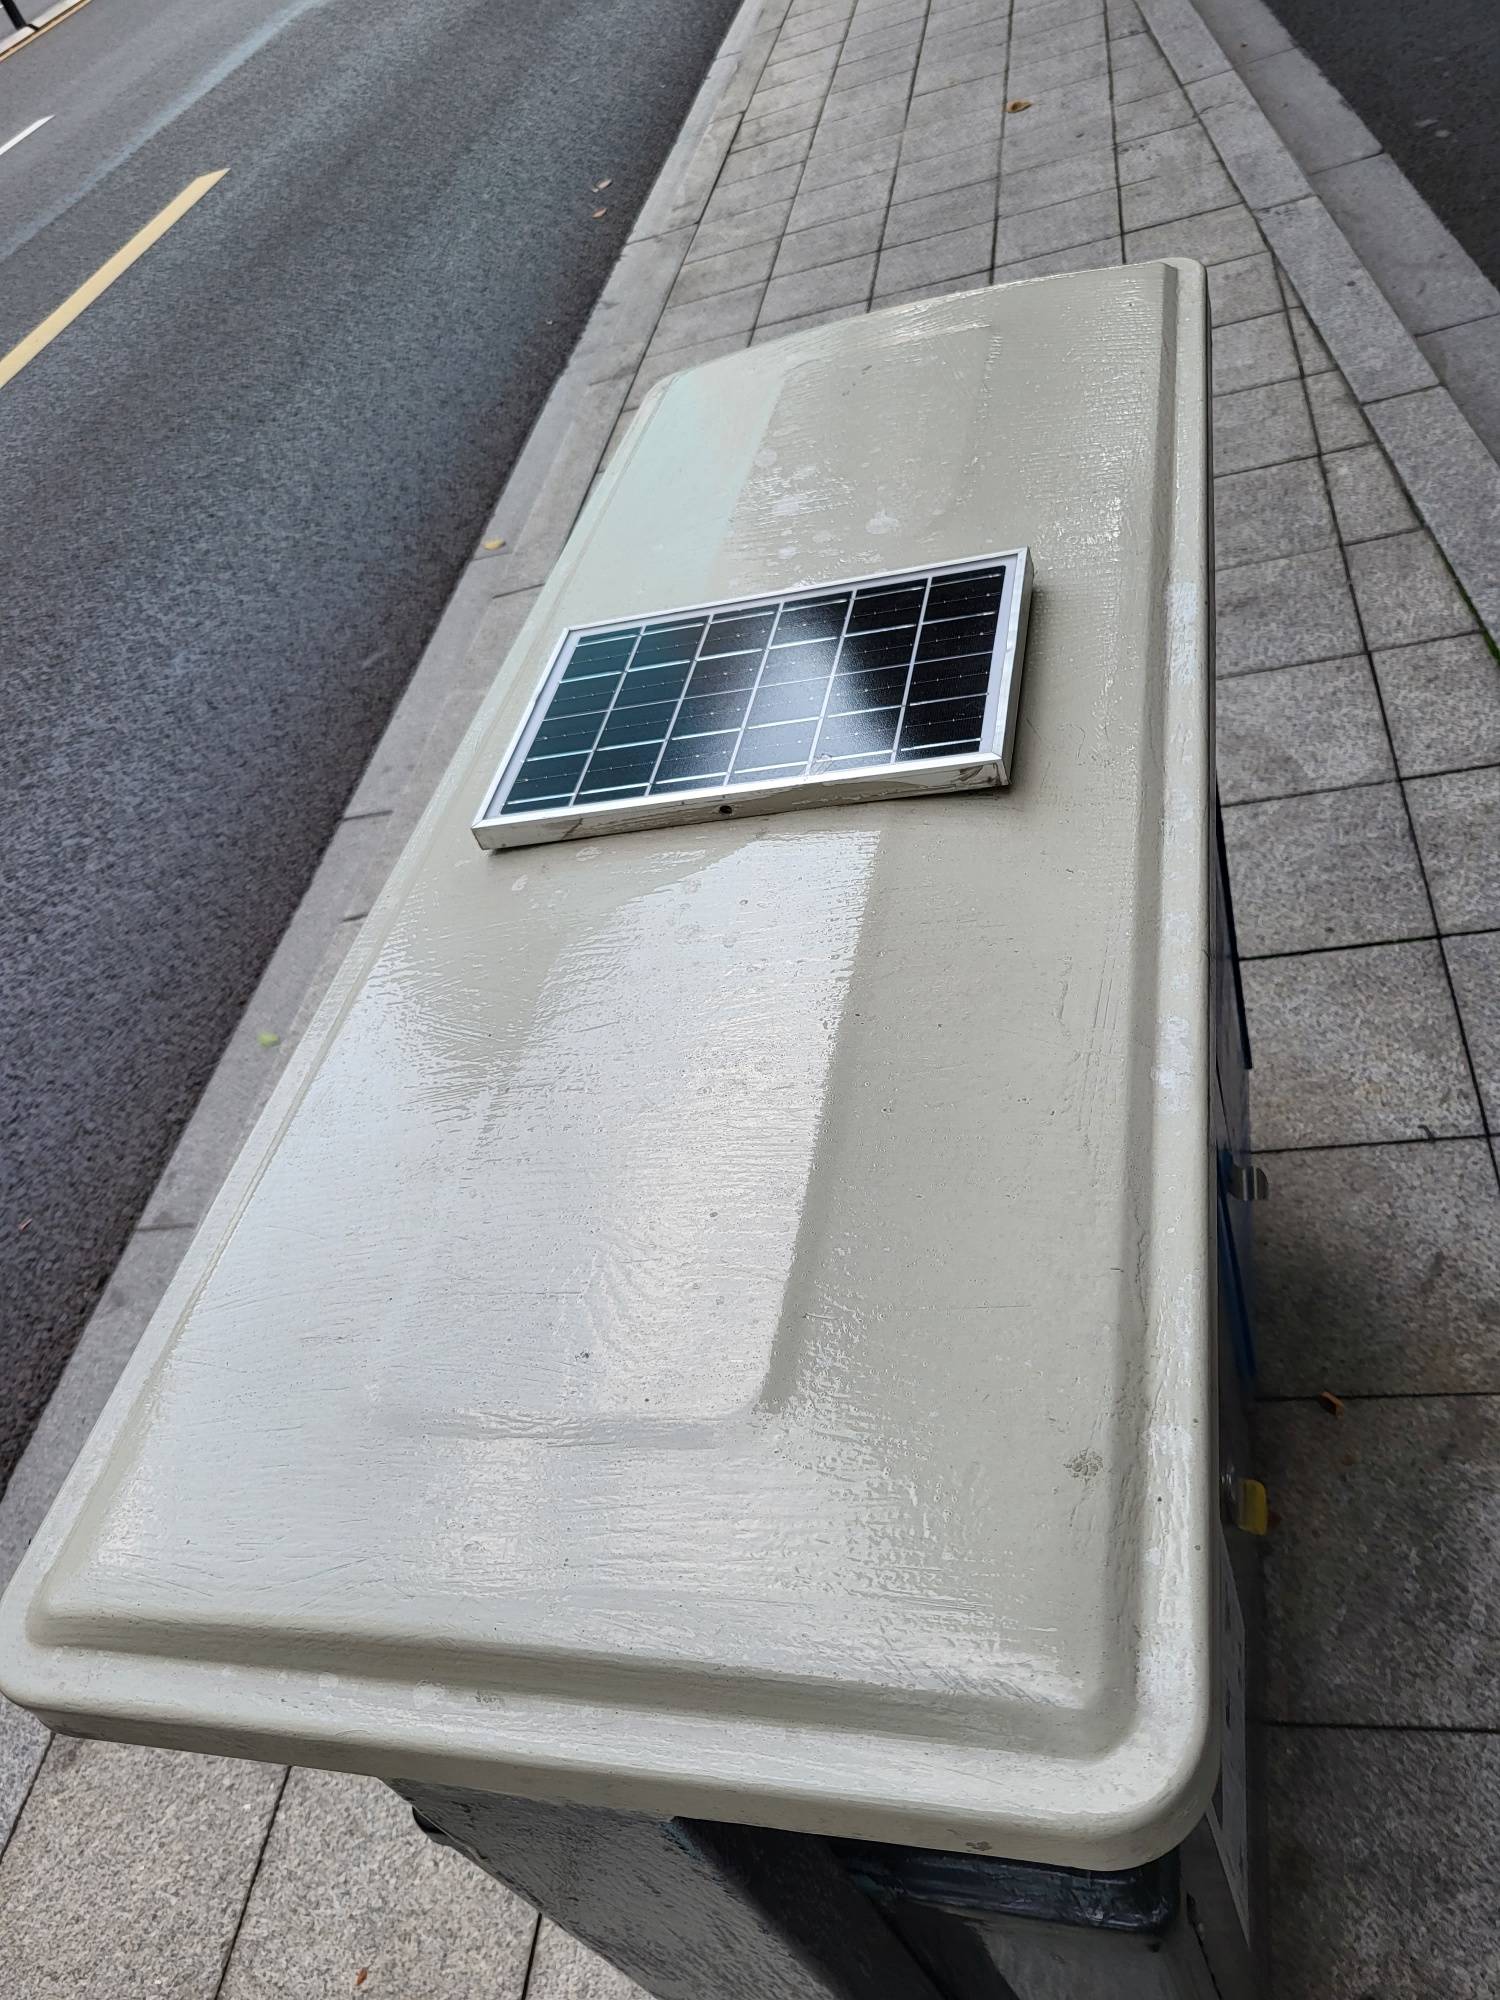 这样会“说话”的垃圾桶亮相宁波街头，你有见过吗？